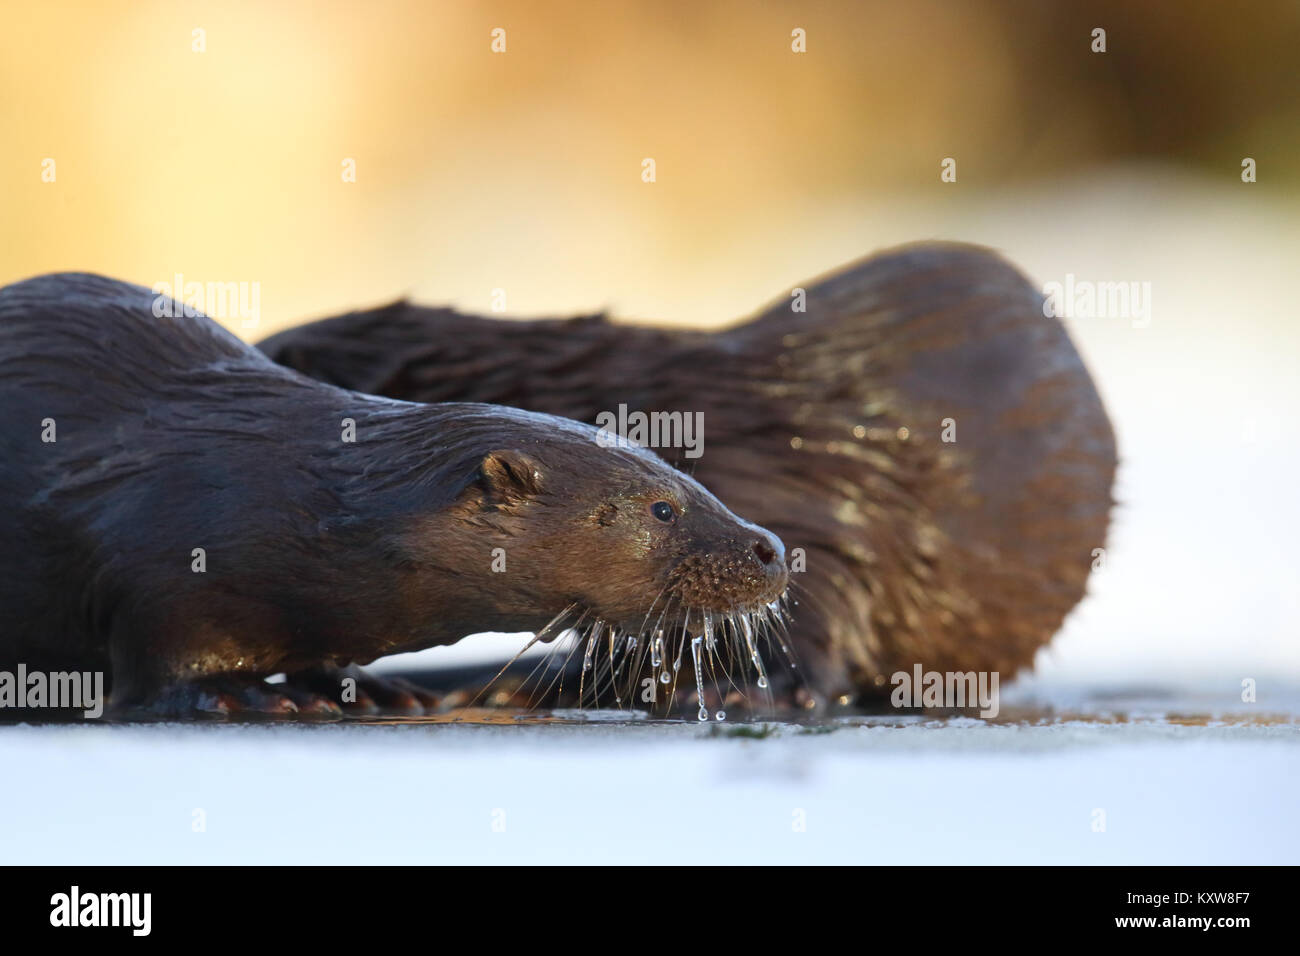 Wild European otters (Lutra lutra), Europe Stock Photo